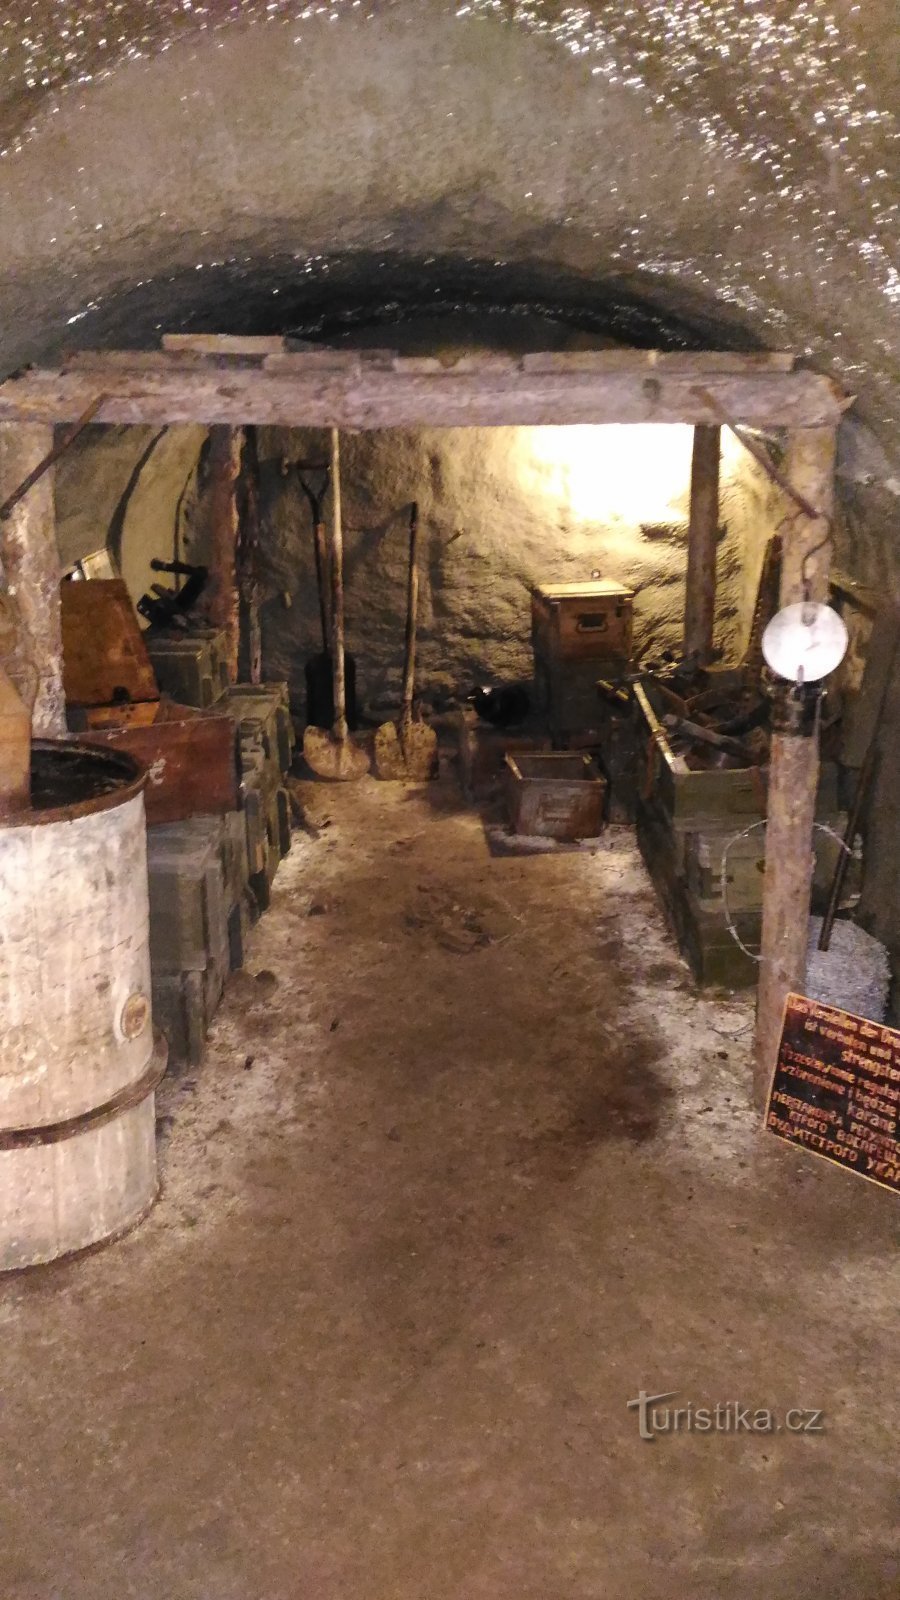 Exhibition in a medieval cellar in Litoměřice.